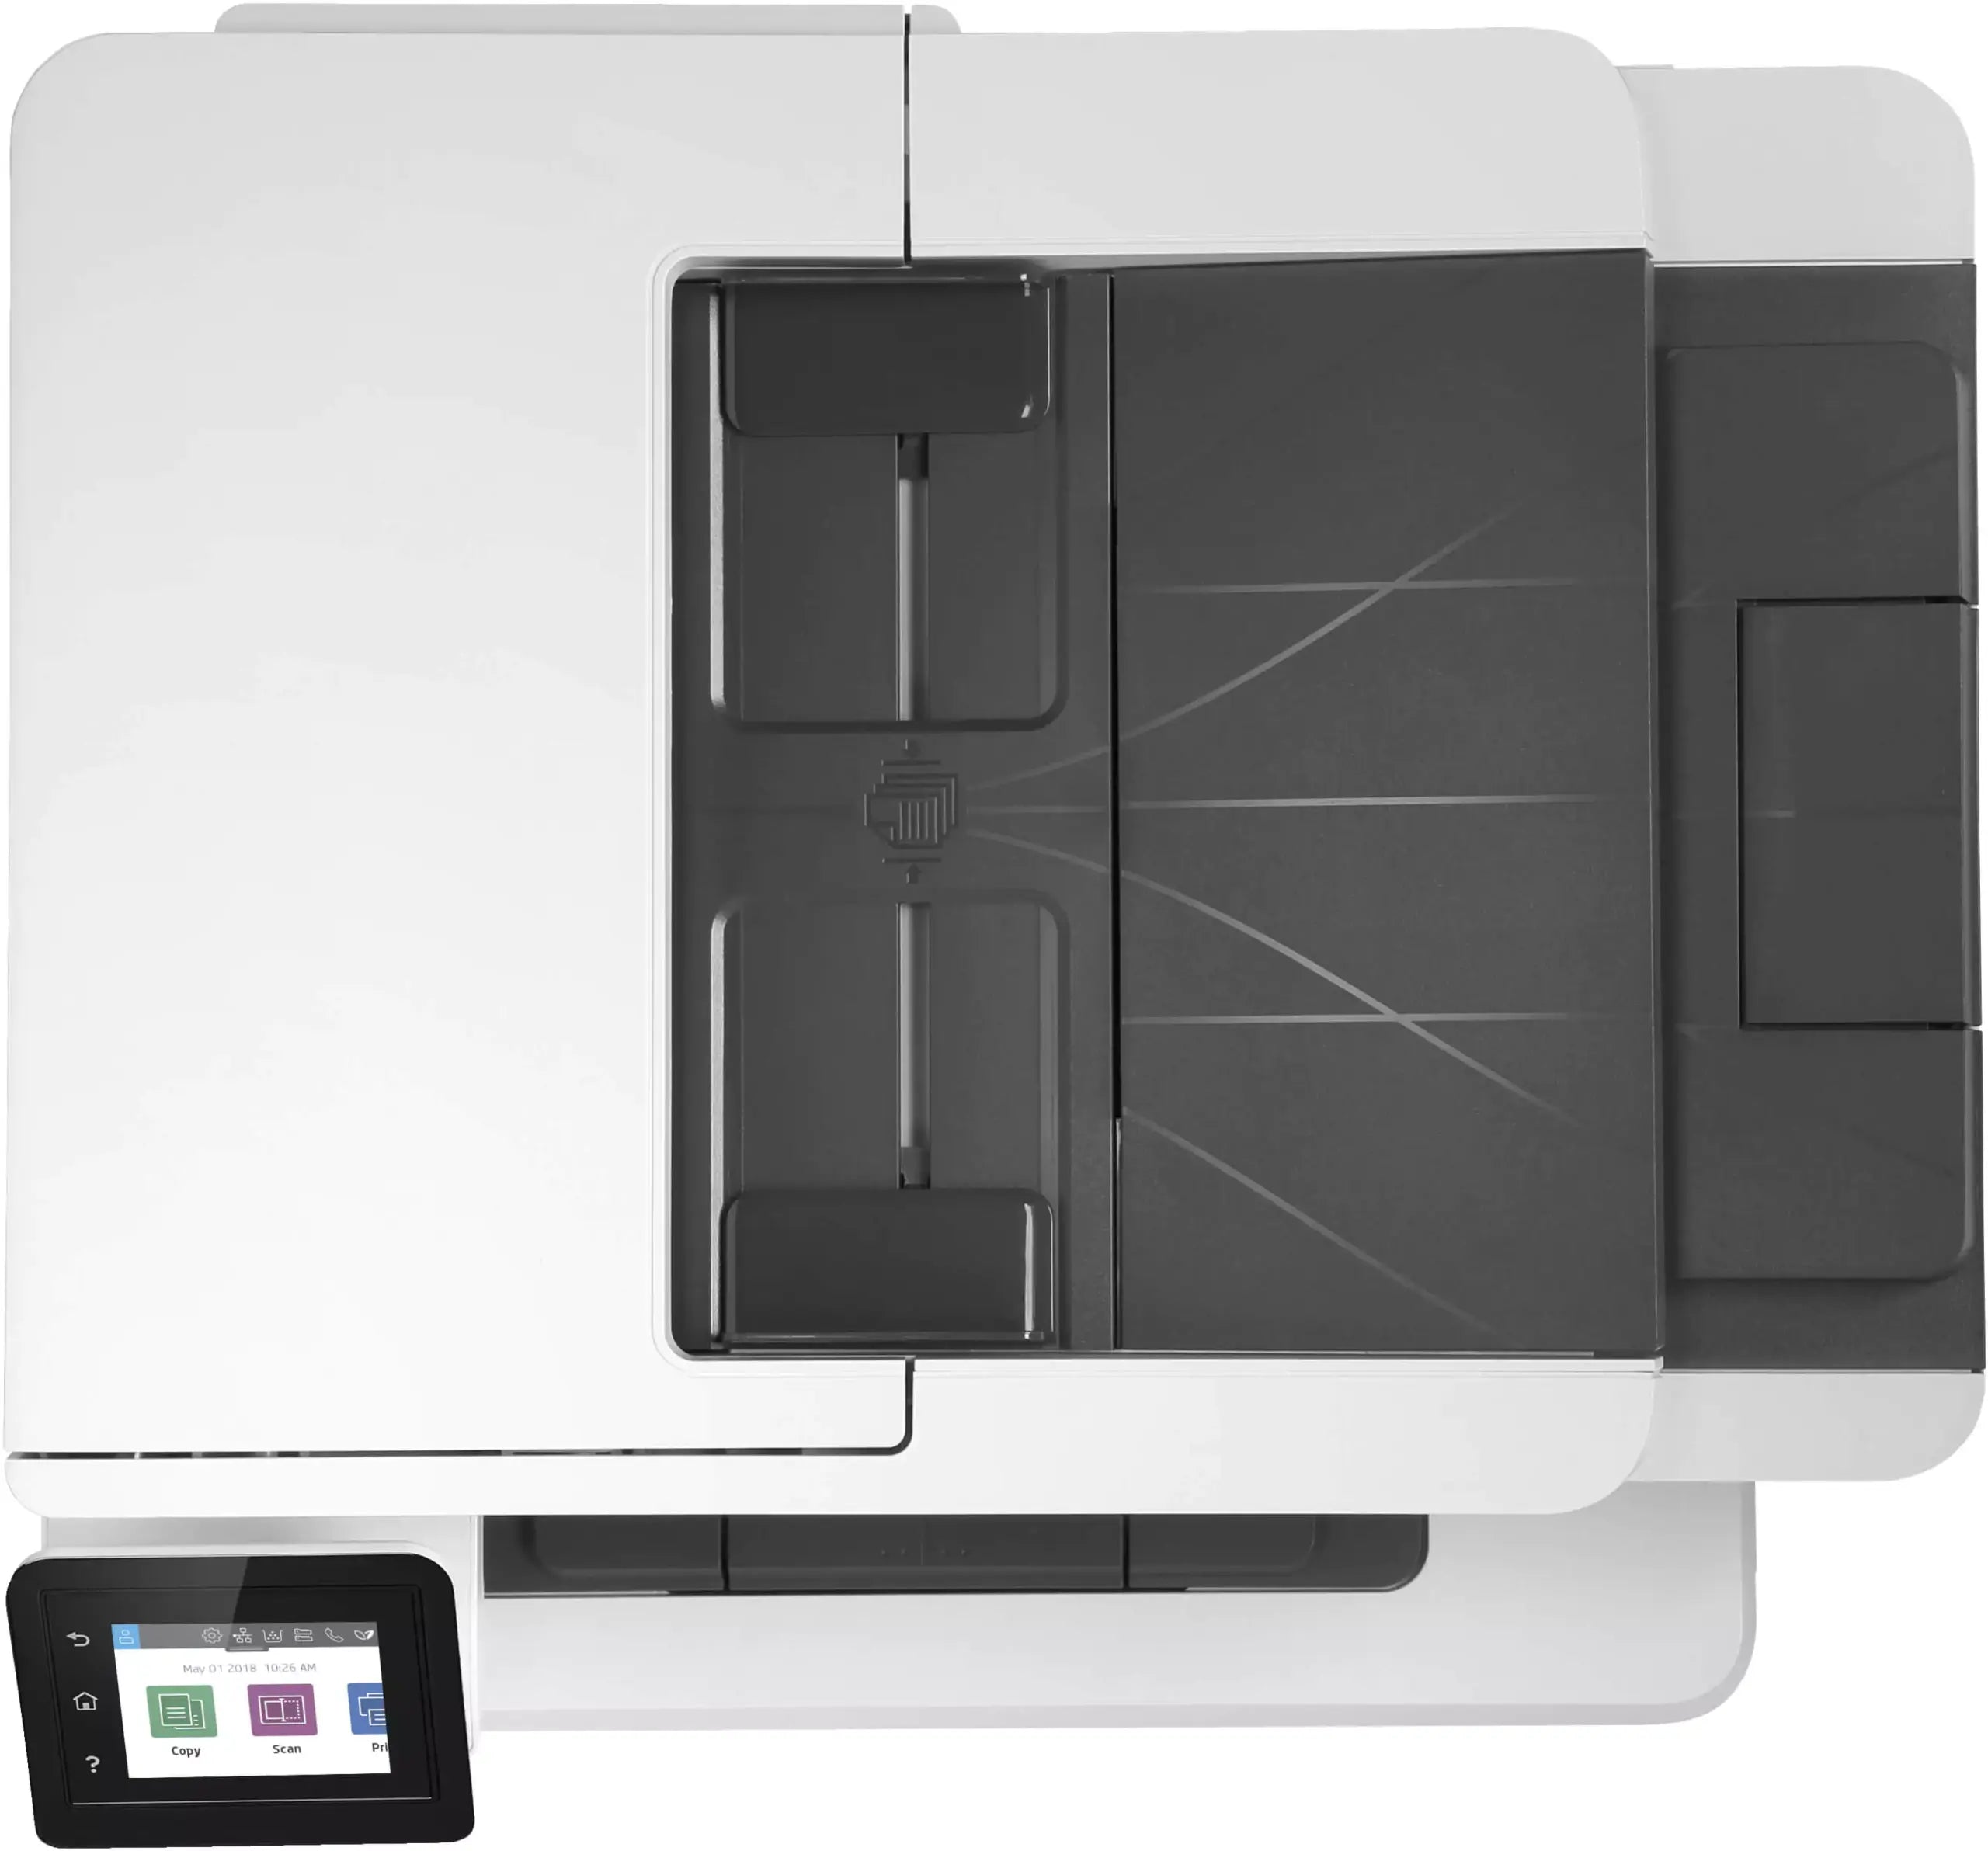 HP LaserJet Pro MFP M428fdn Multifunzione A4 Bianco/Nero 1200DPI 38 ppm Fax Rete Avanzata perfetta per i Professionisti Prodotto NUOVO